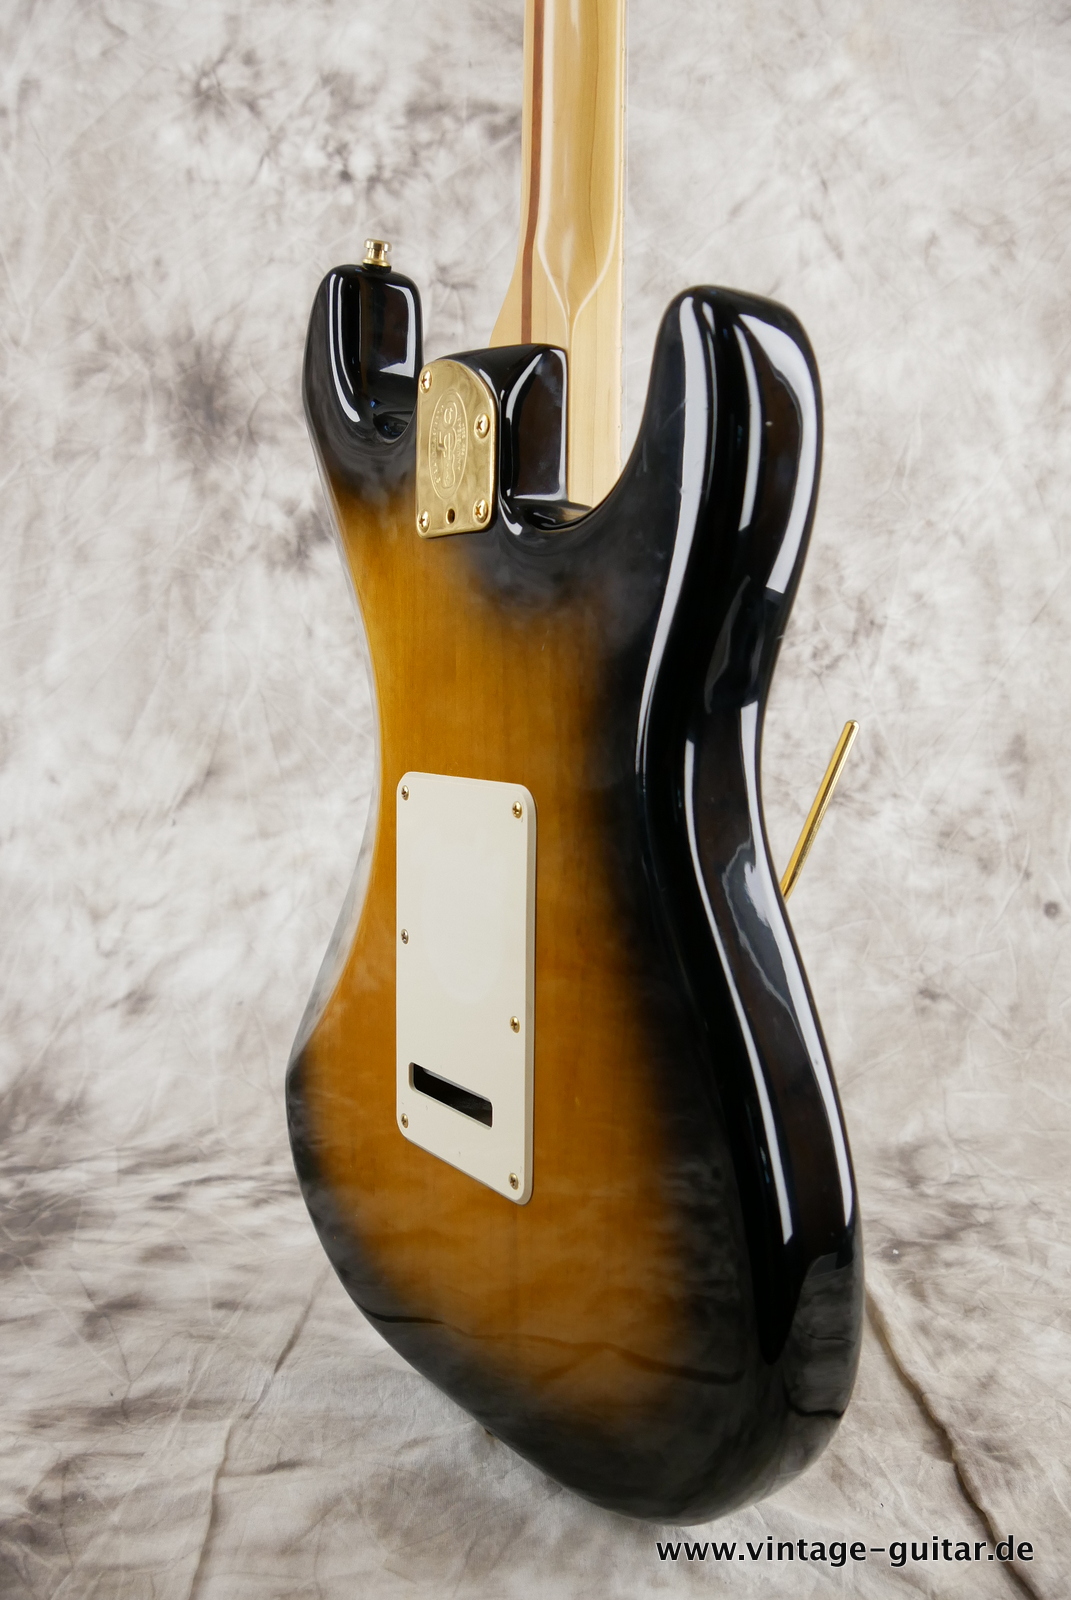 Fender_Stratocaster_deluxe_50th_anniversary__left_hand_sunburst_tweed_case_2004-012.JPG